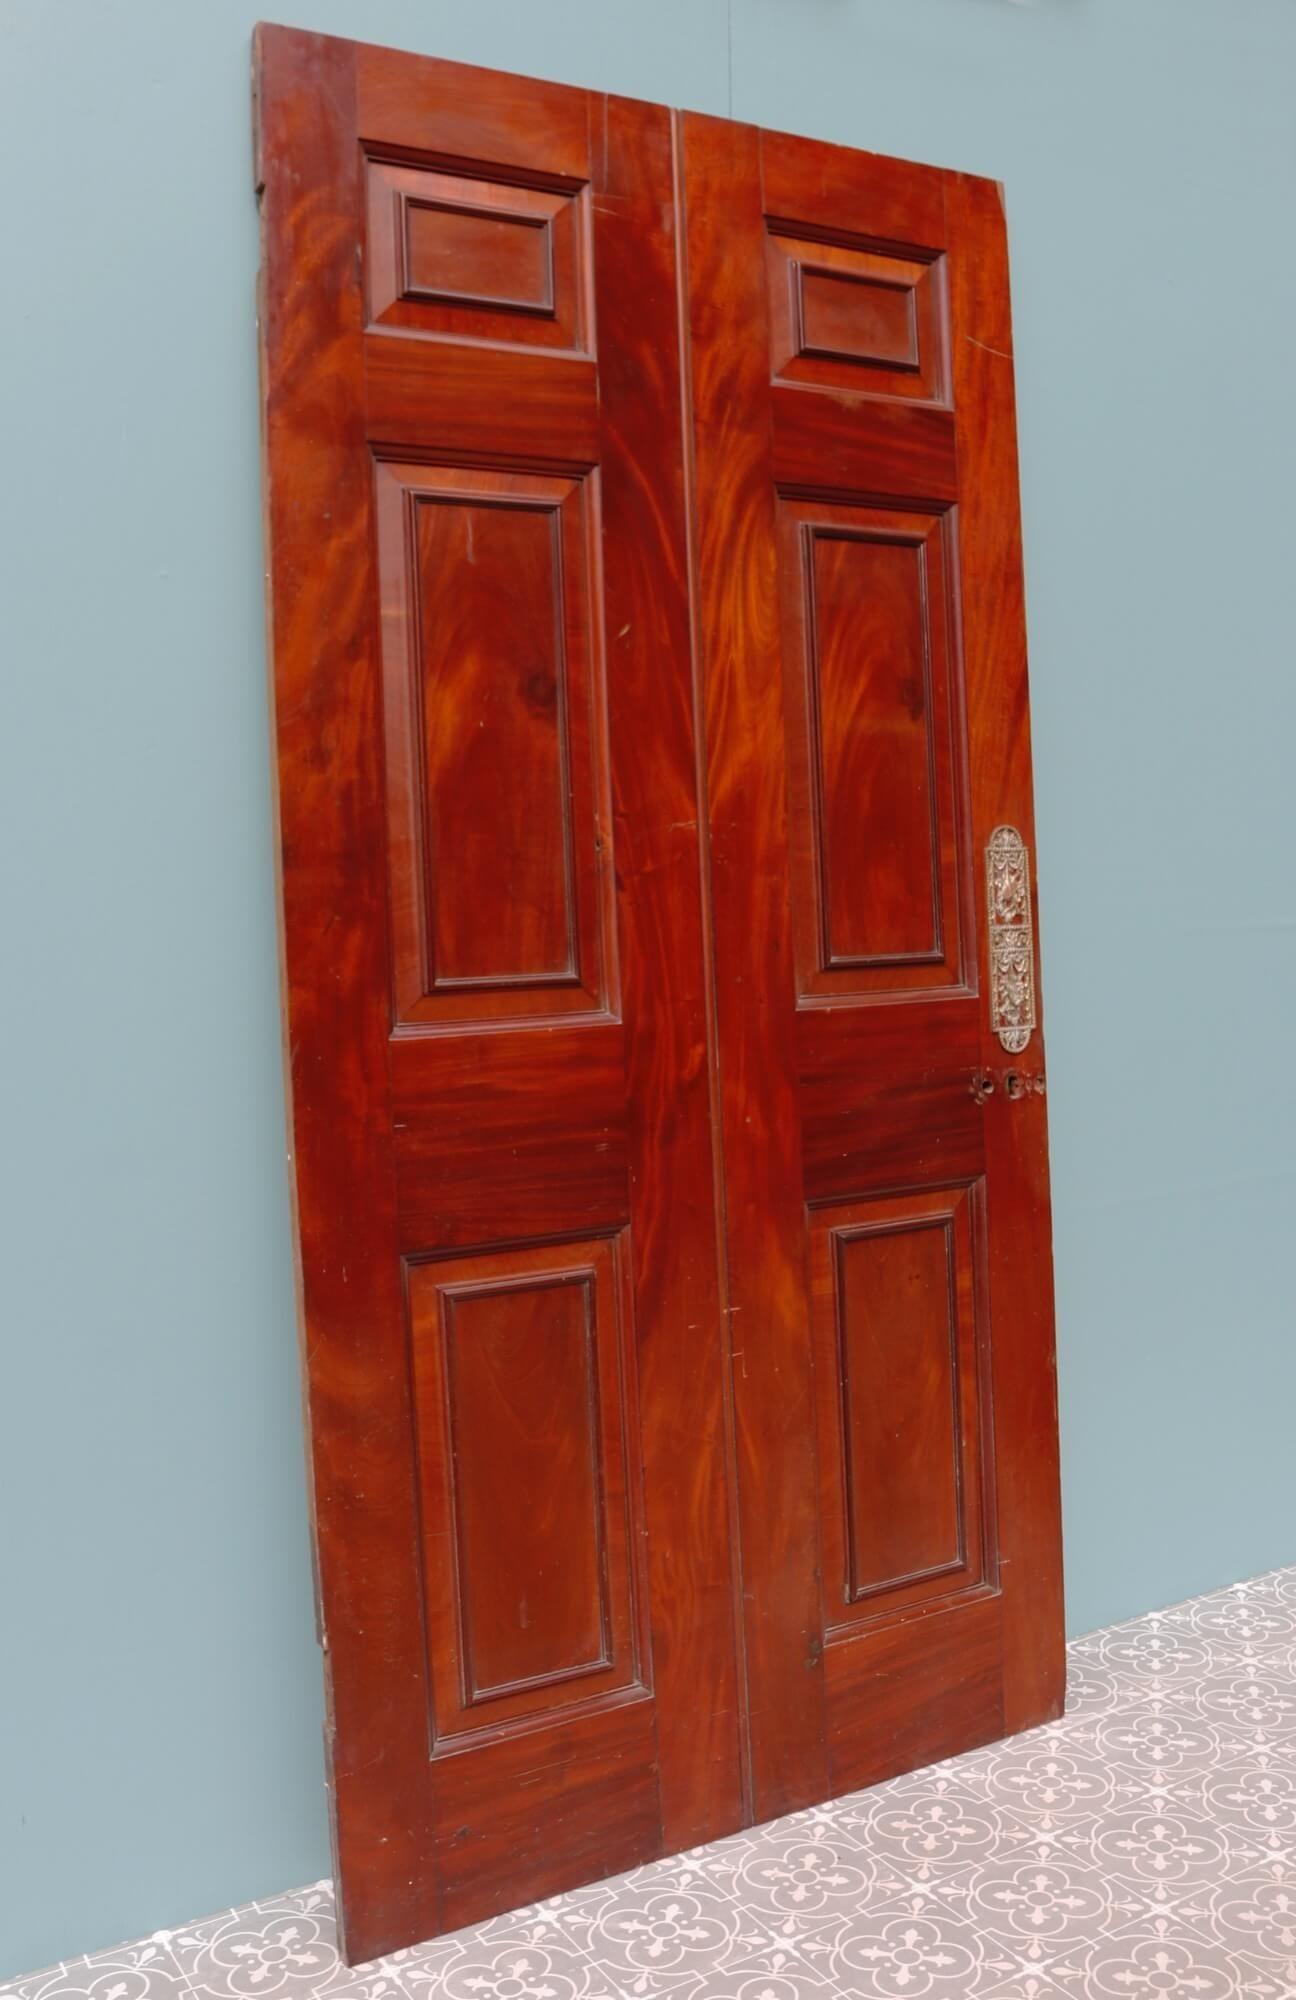 Cette belle porte intérieure géorgienne date de la fin des années 1700. Fabriquée en acajou, elle présente une couleur riche et un magnifique grain de bois acajou flammé, ce qui en fait une magnifique porte intérieure dans une propriété d'époque. La